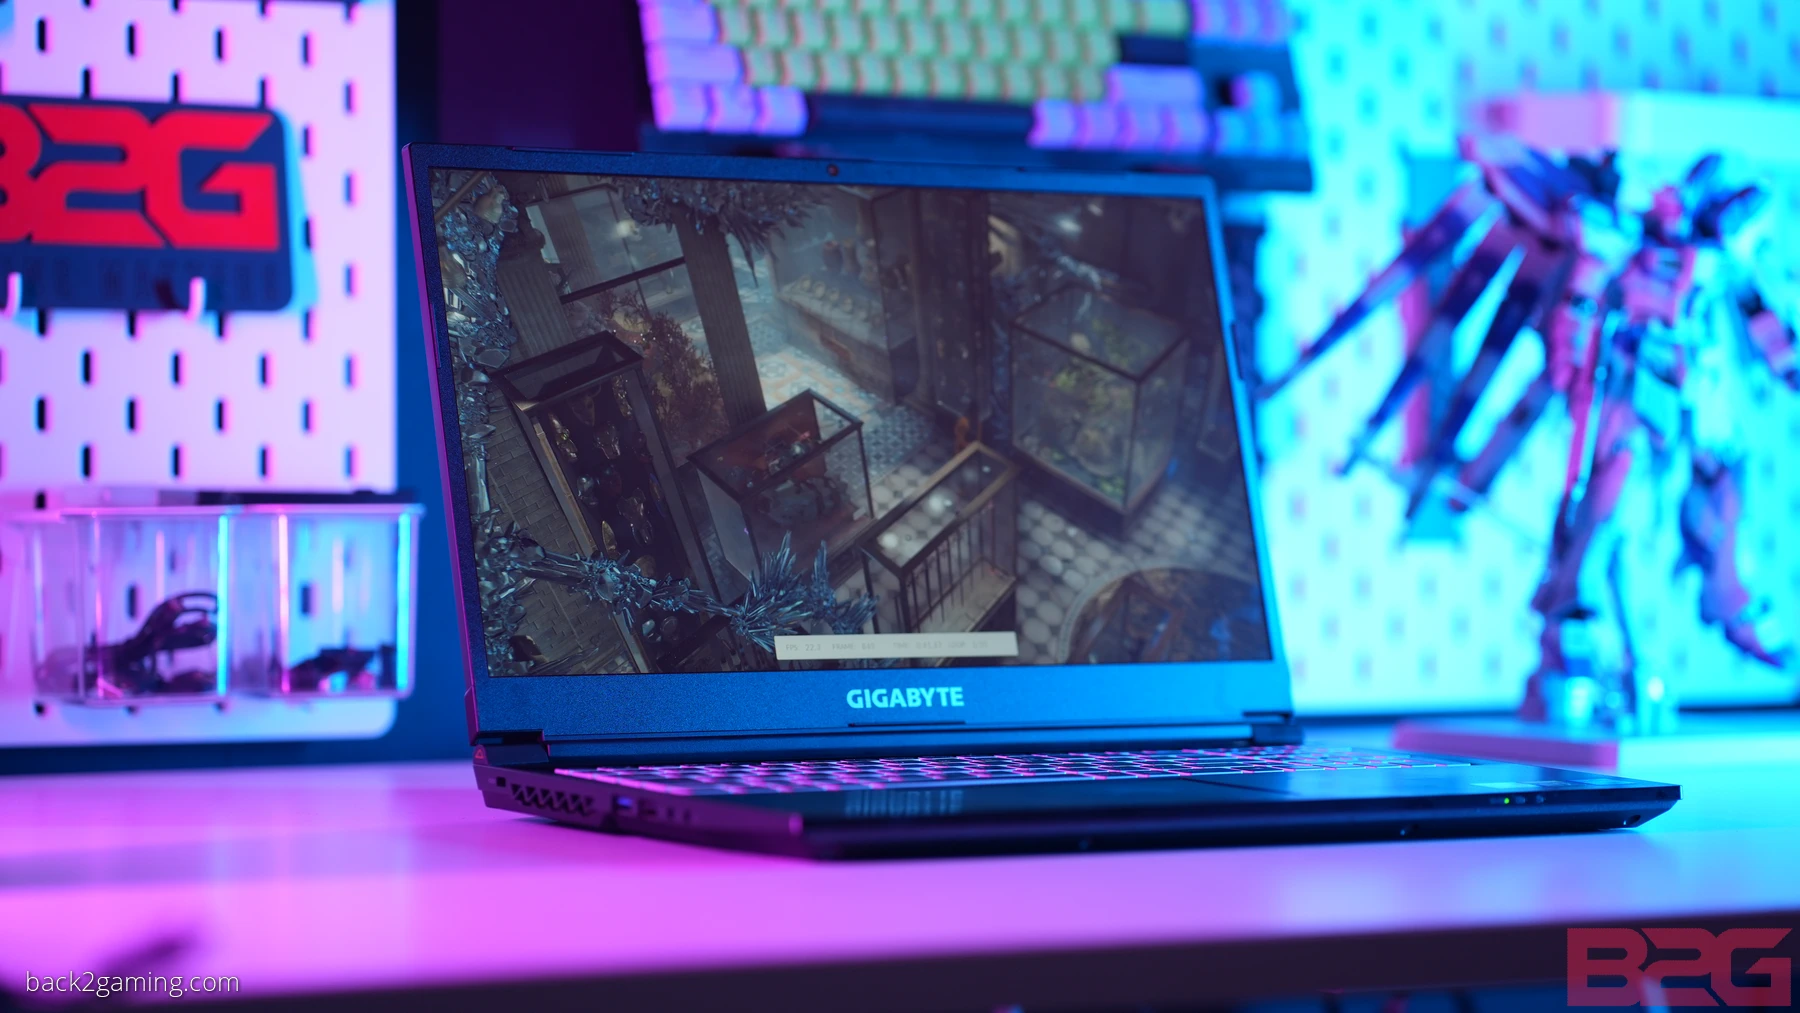 GIGABYTE G5 GE (i5-12500H + RTX 3050) Gaming Laptop Review - returnal